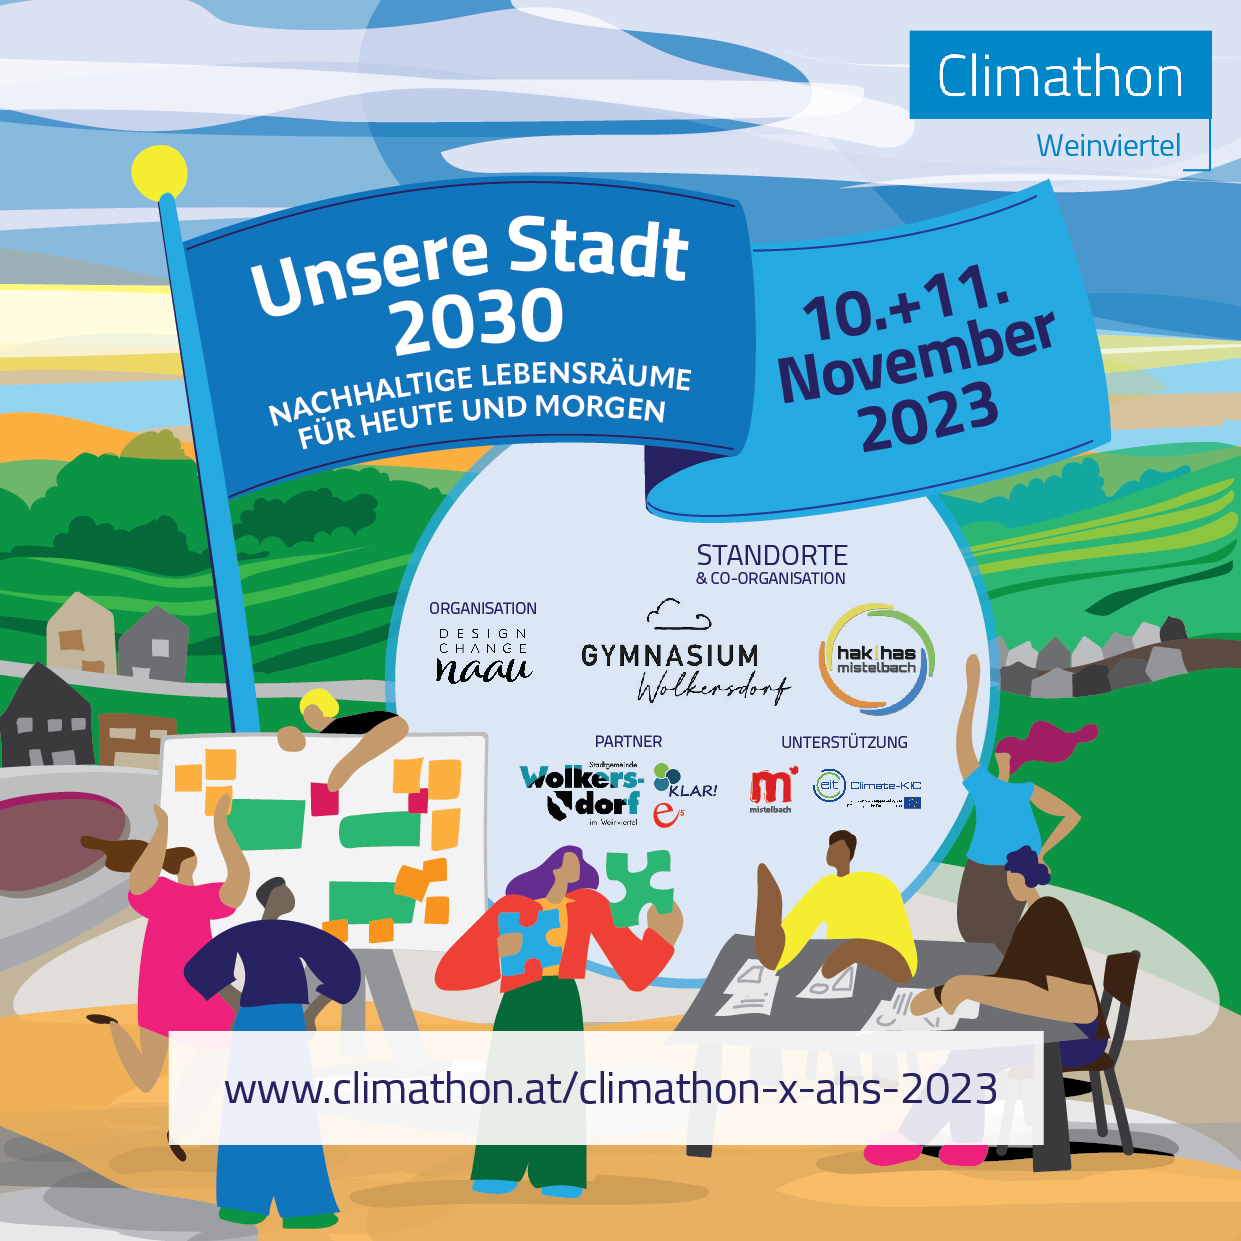 Climathon Weinviertel 2023 Wolkersdorf + Mistelbach